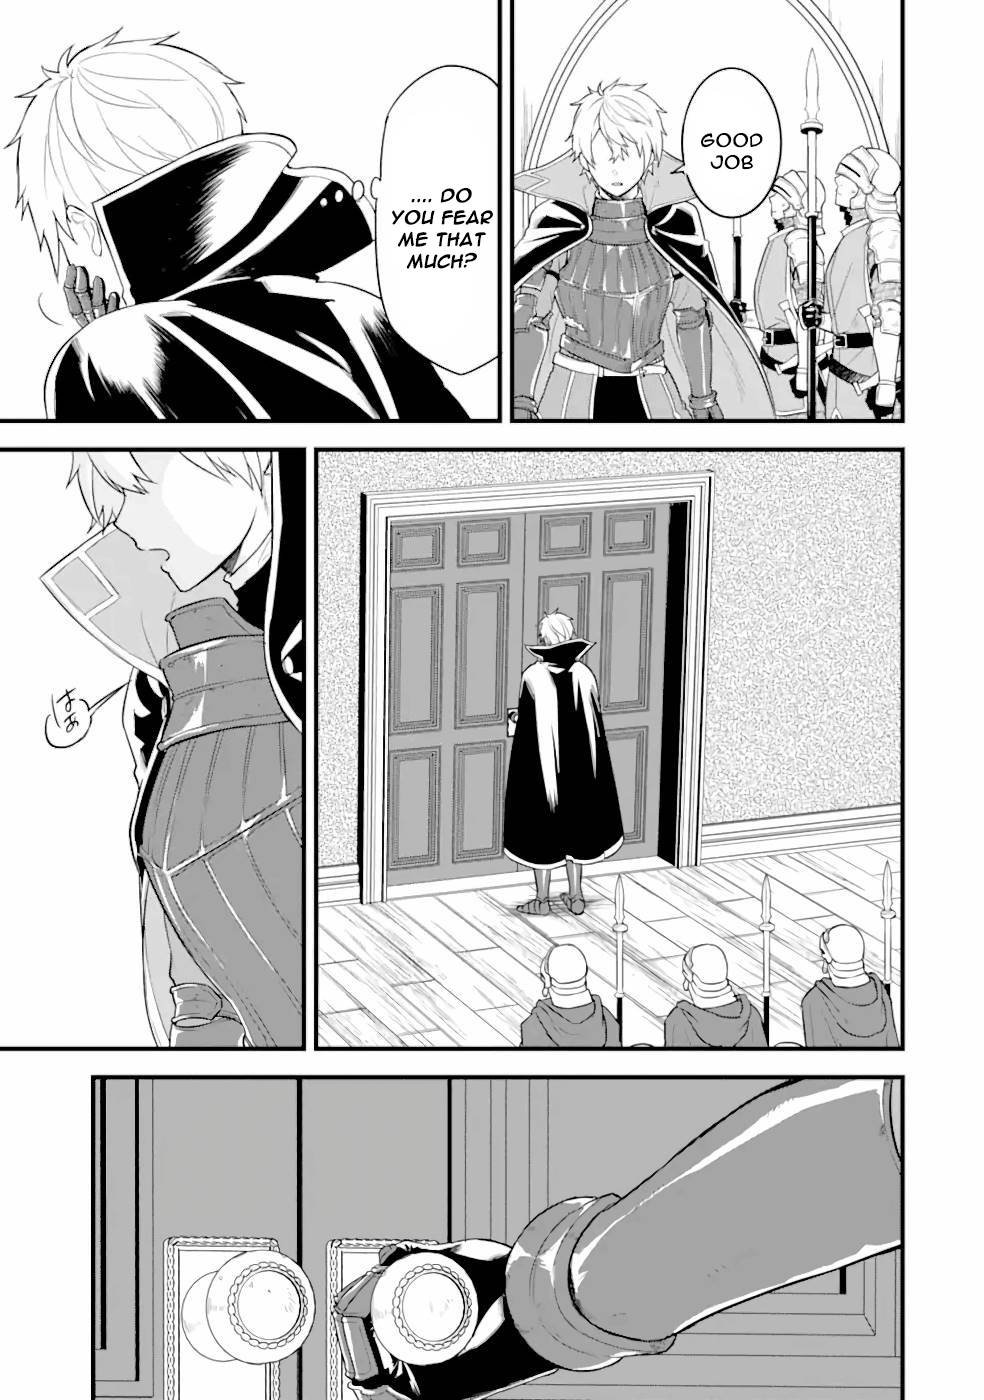 Mysterious Job Called Oda Nobunaga - chapter 31 - #4